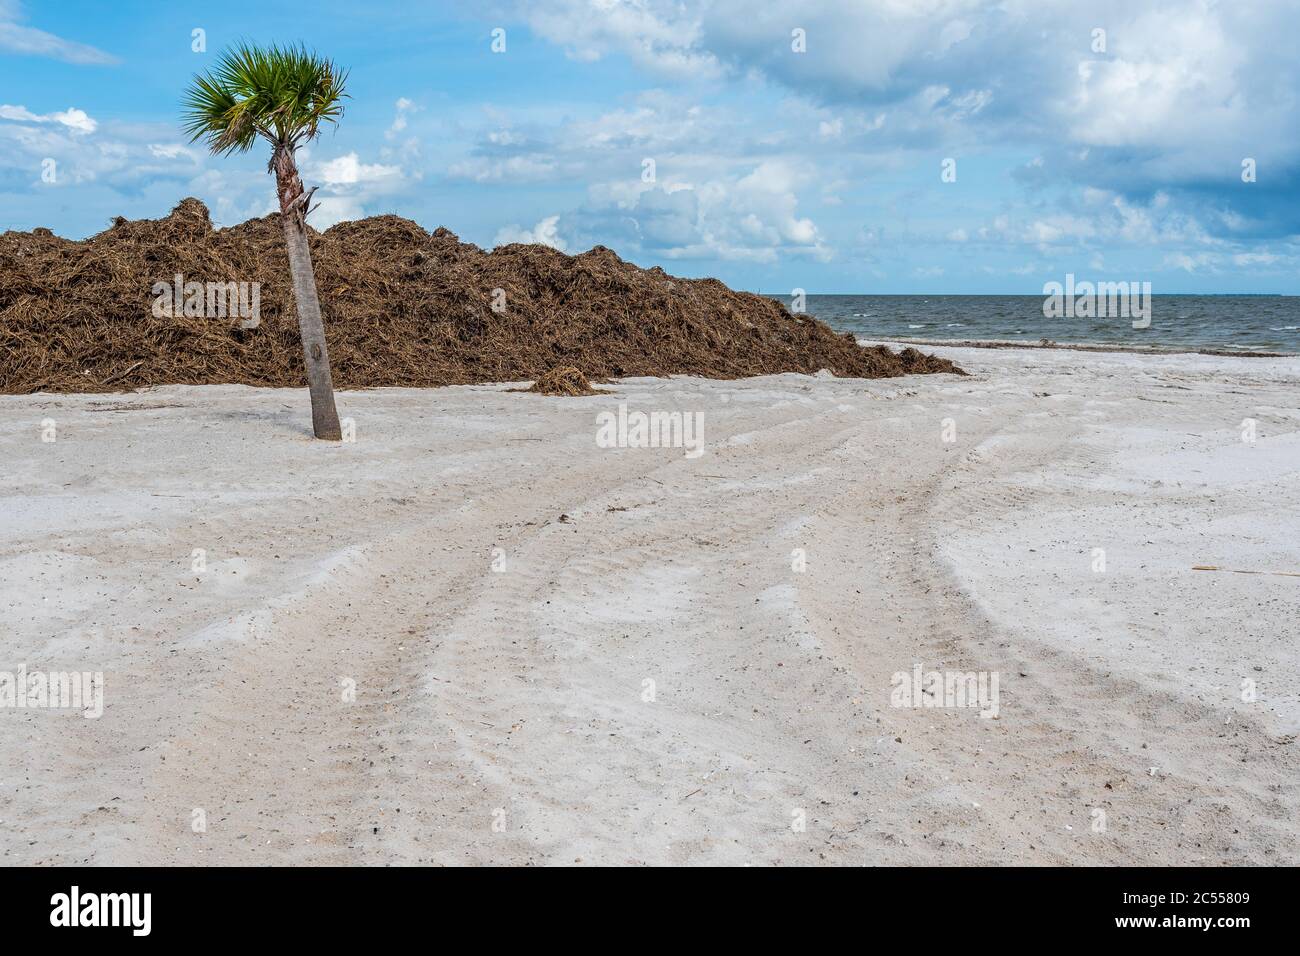 Tempesta tropicale ripulire sulla spiaggia della costa del Golfo del Mississippi dopo la tempesta tropicale Cristobal ha lasciato i detriti di impennata della tempesta il 7 giugno 2020. Foto Stock